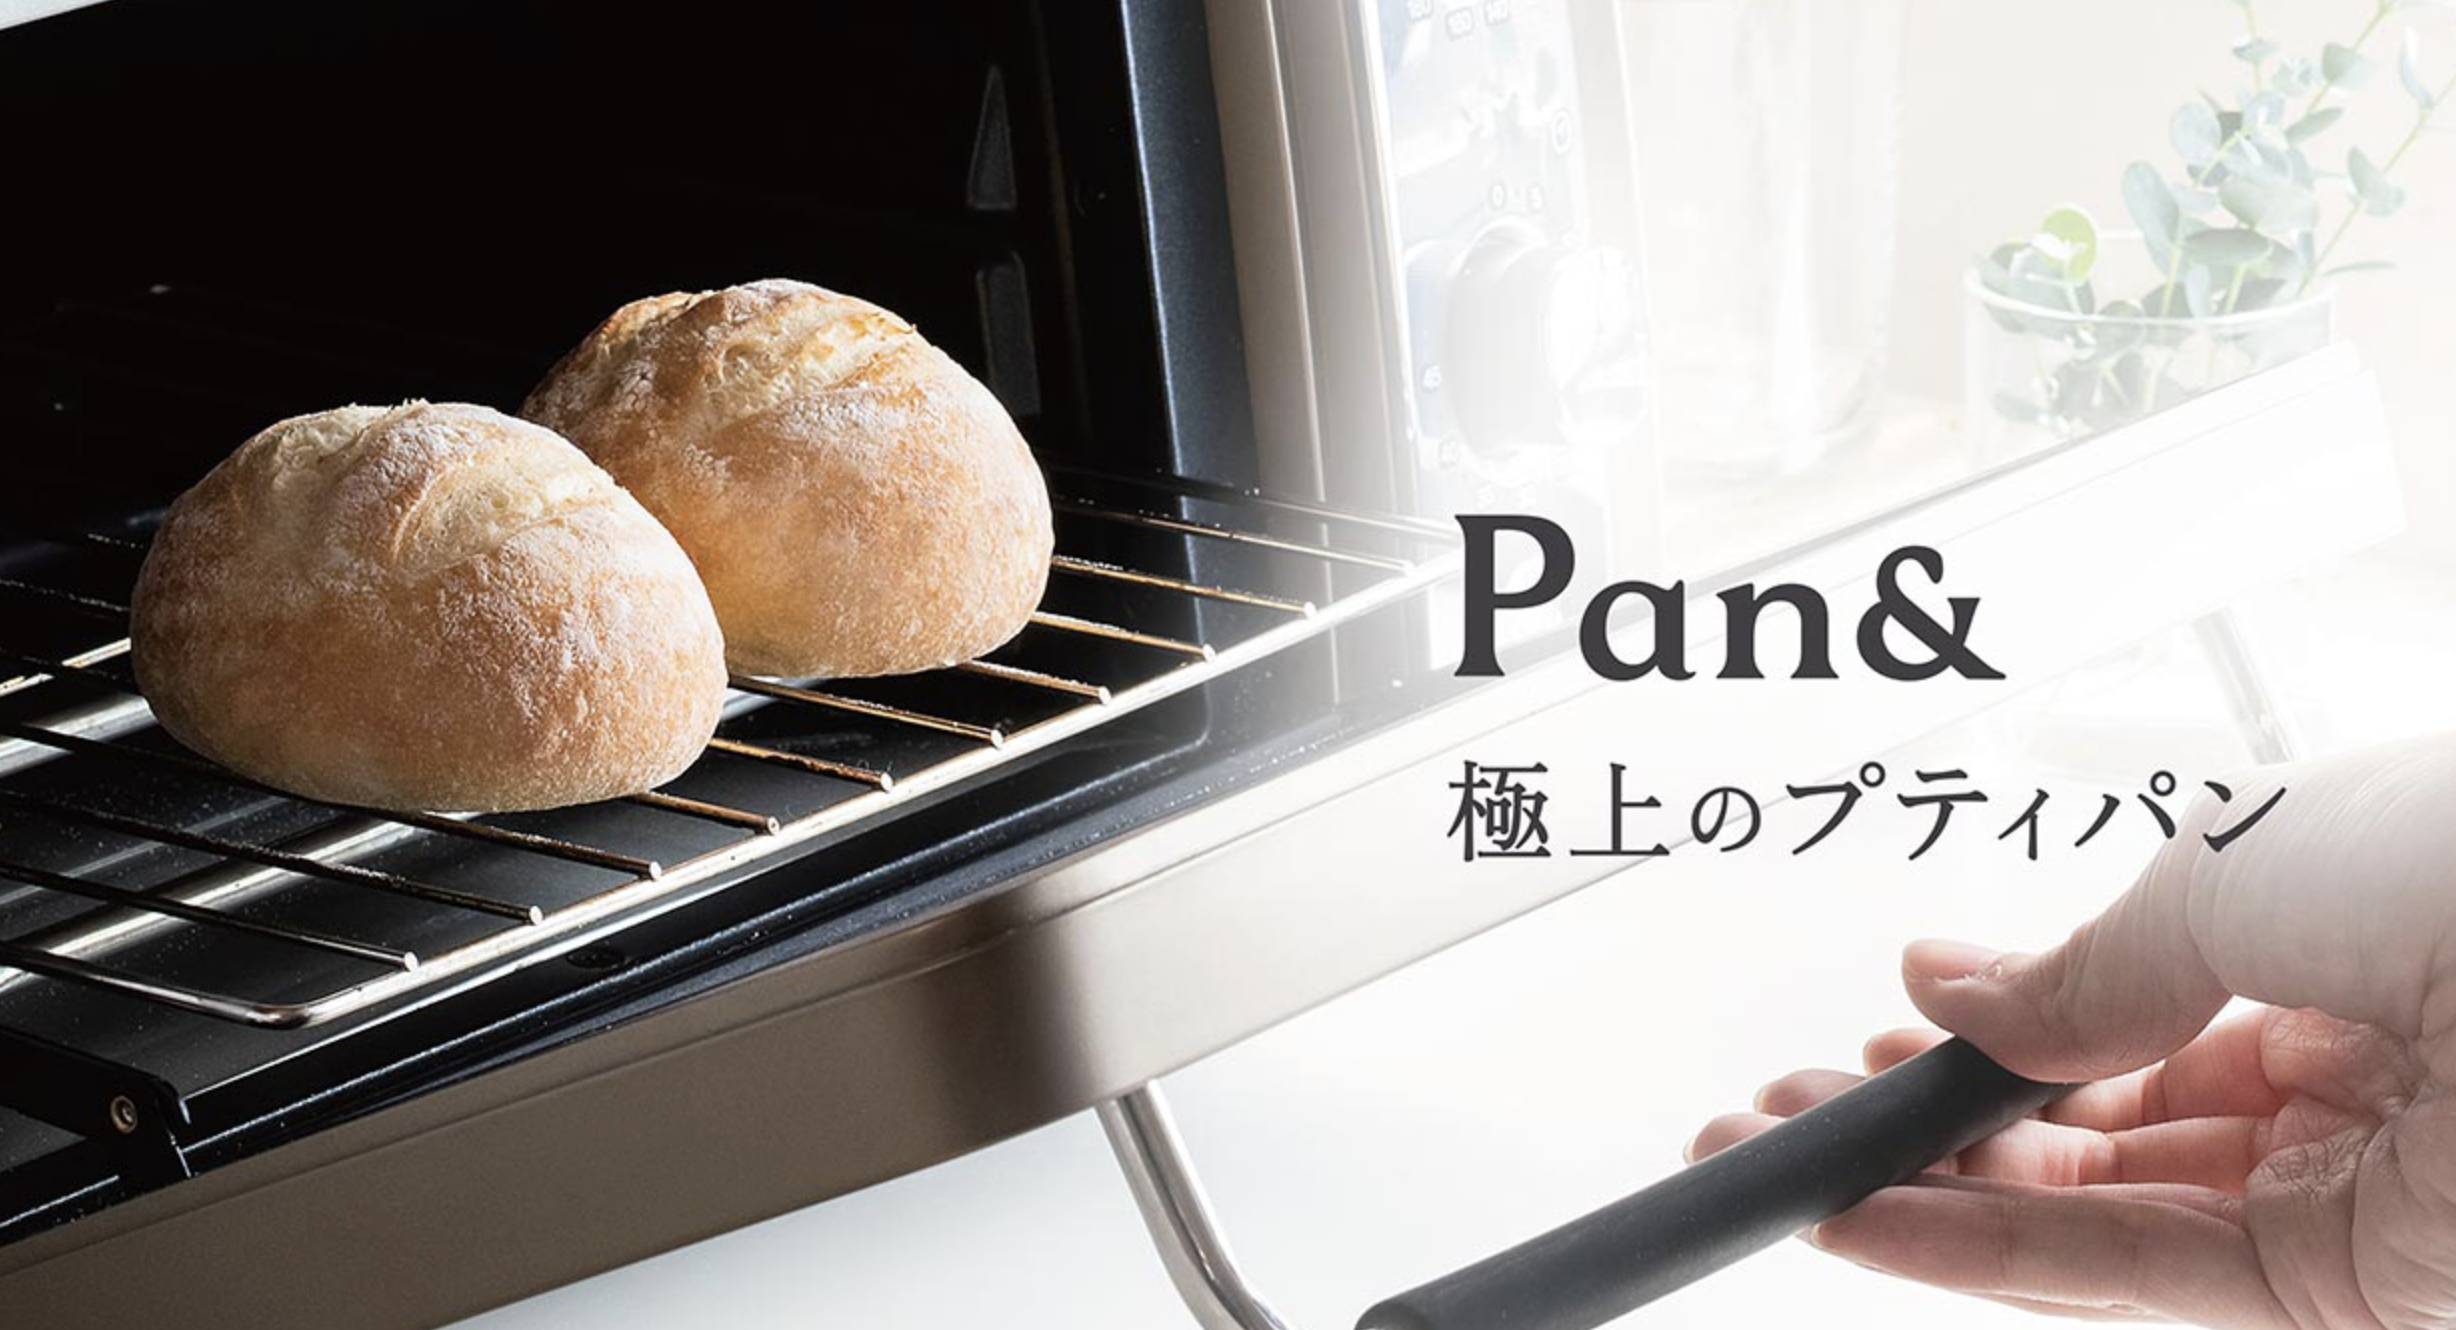 Pan&のトップ画像